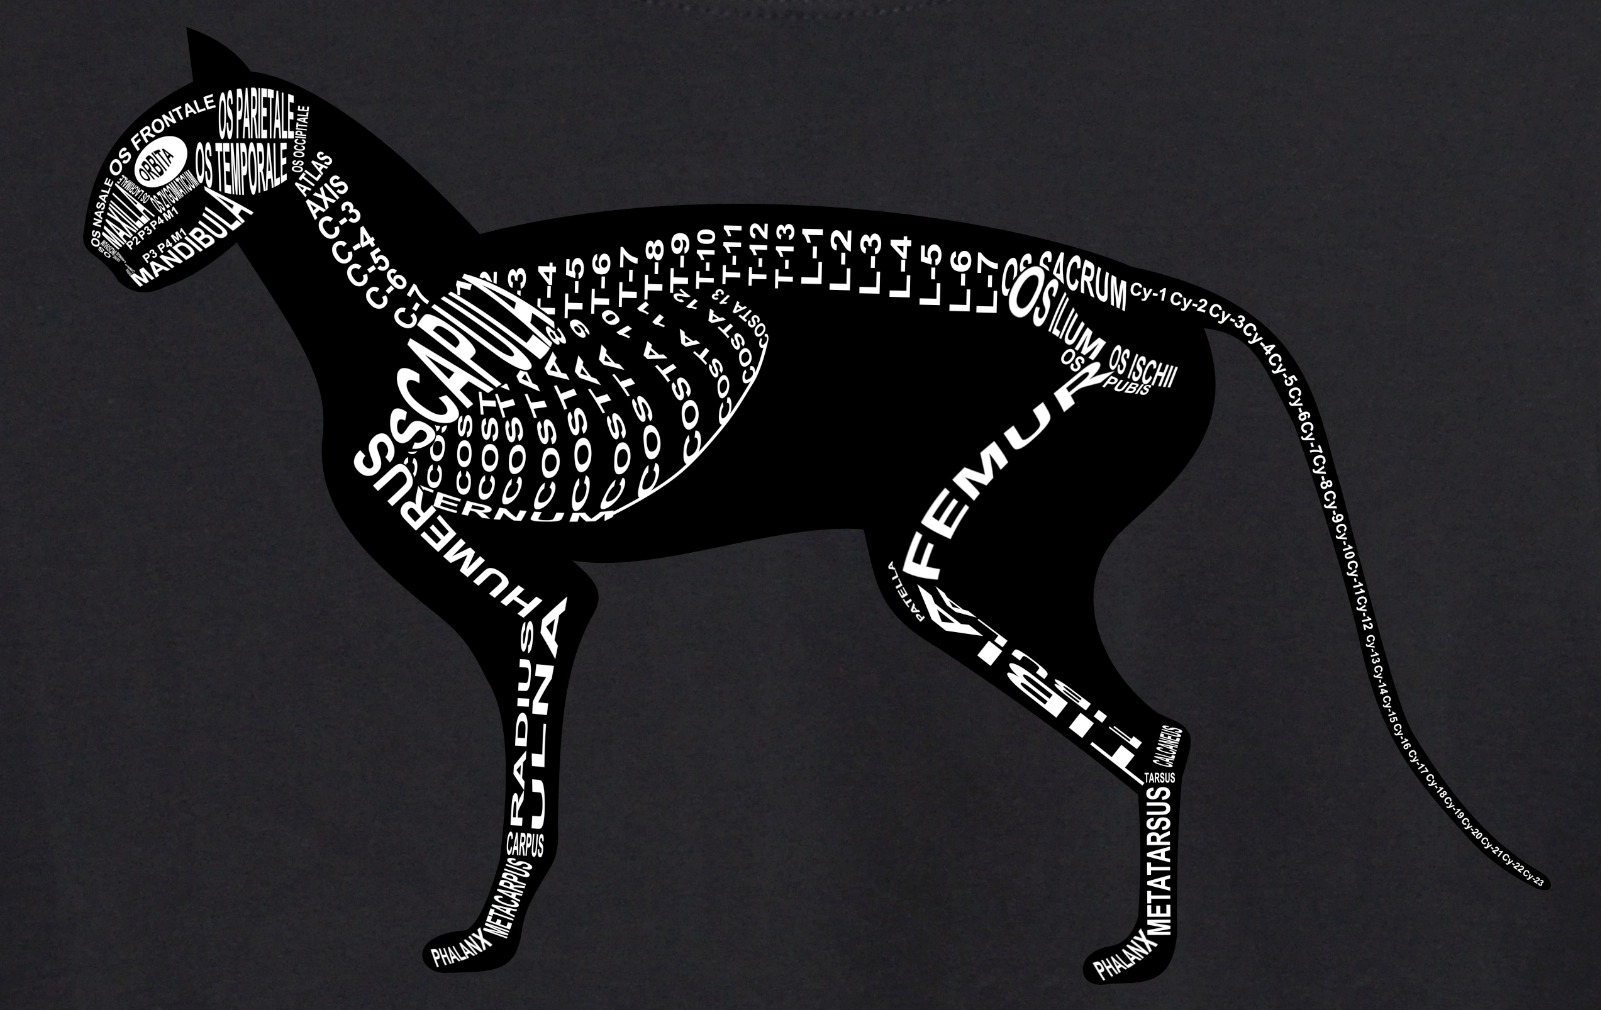 Motiv Katze: Skelett mit anatomischen Bezeichnungen der Knochen für Tierarzt und Tiermedizin-Student - Wort Anatomie